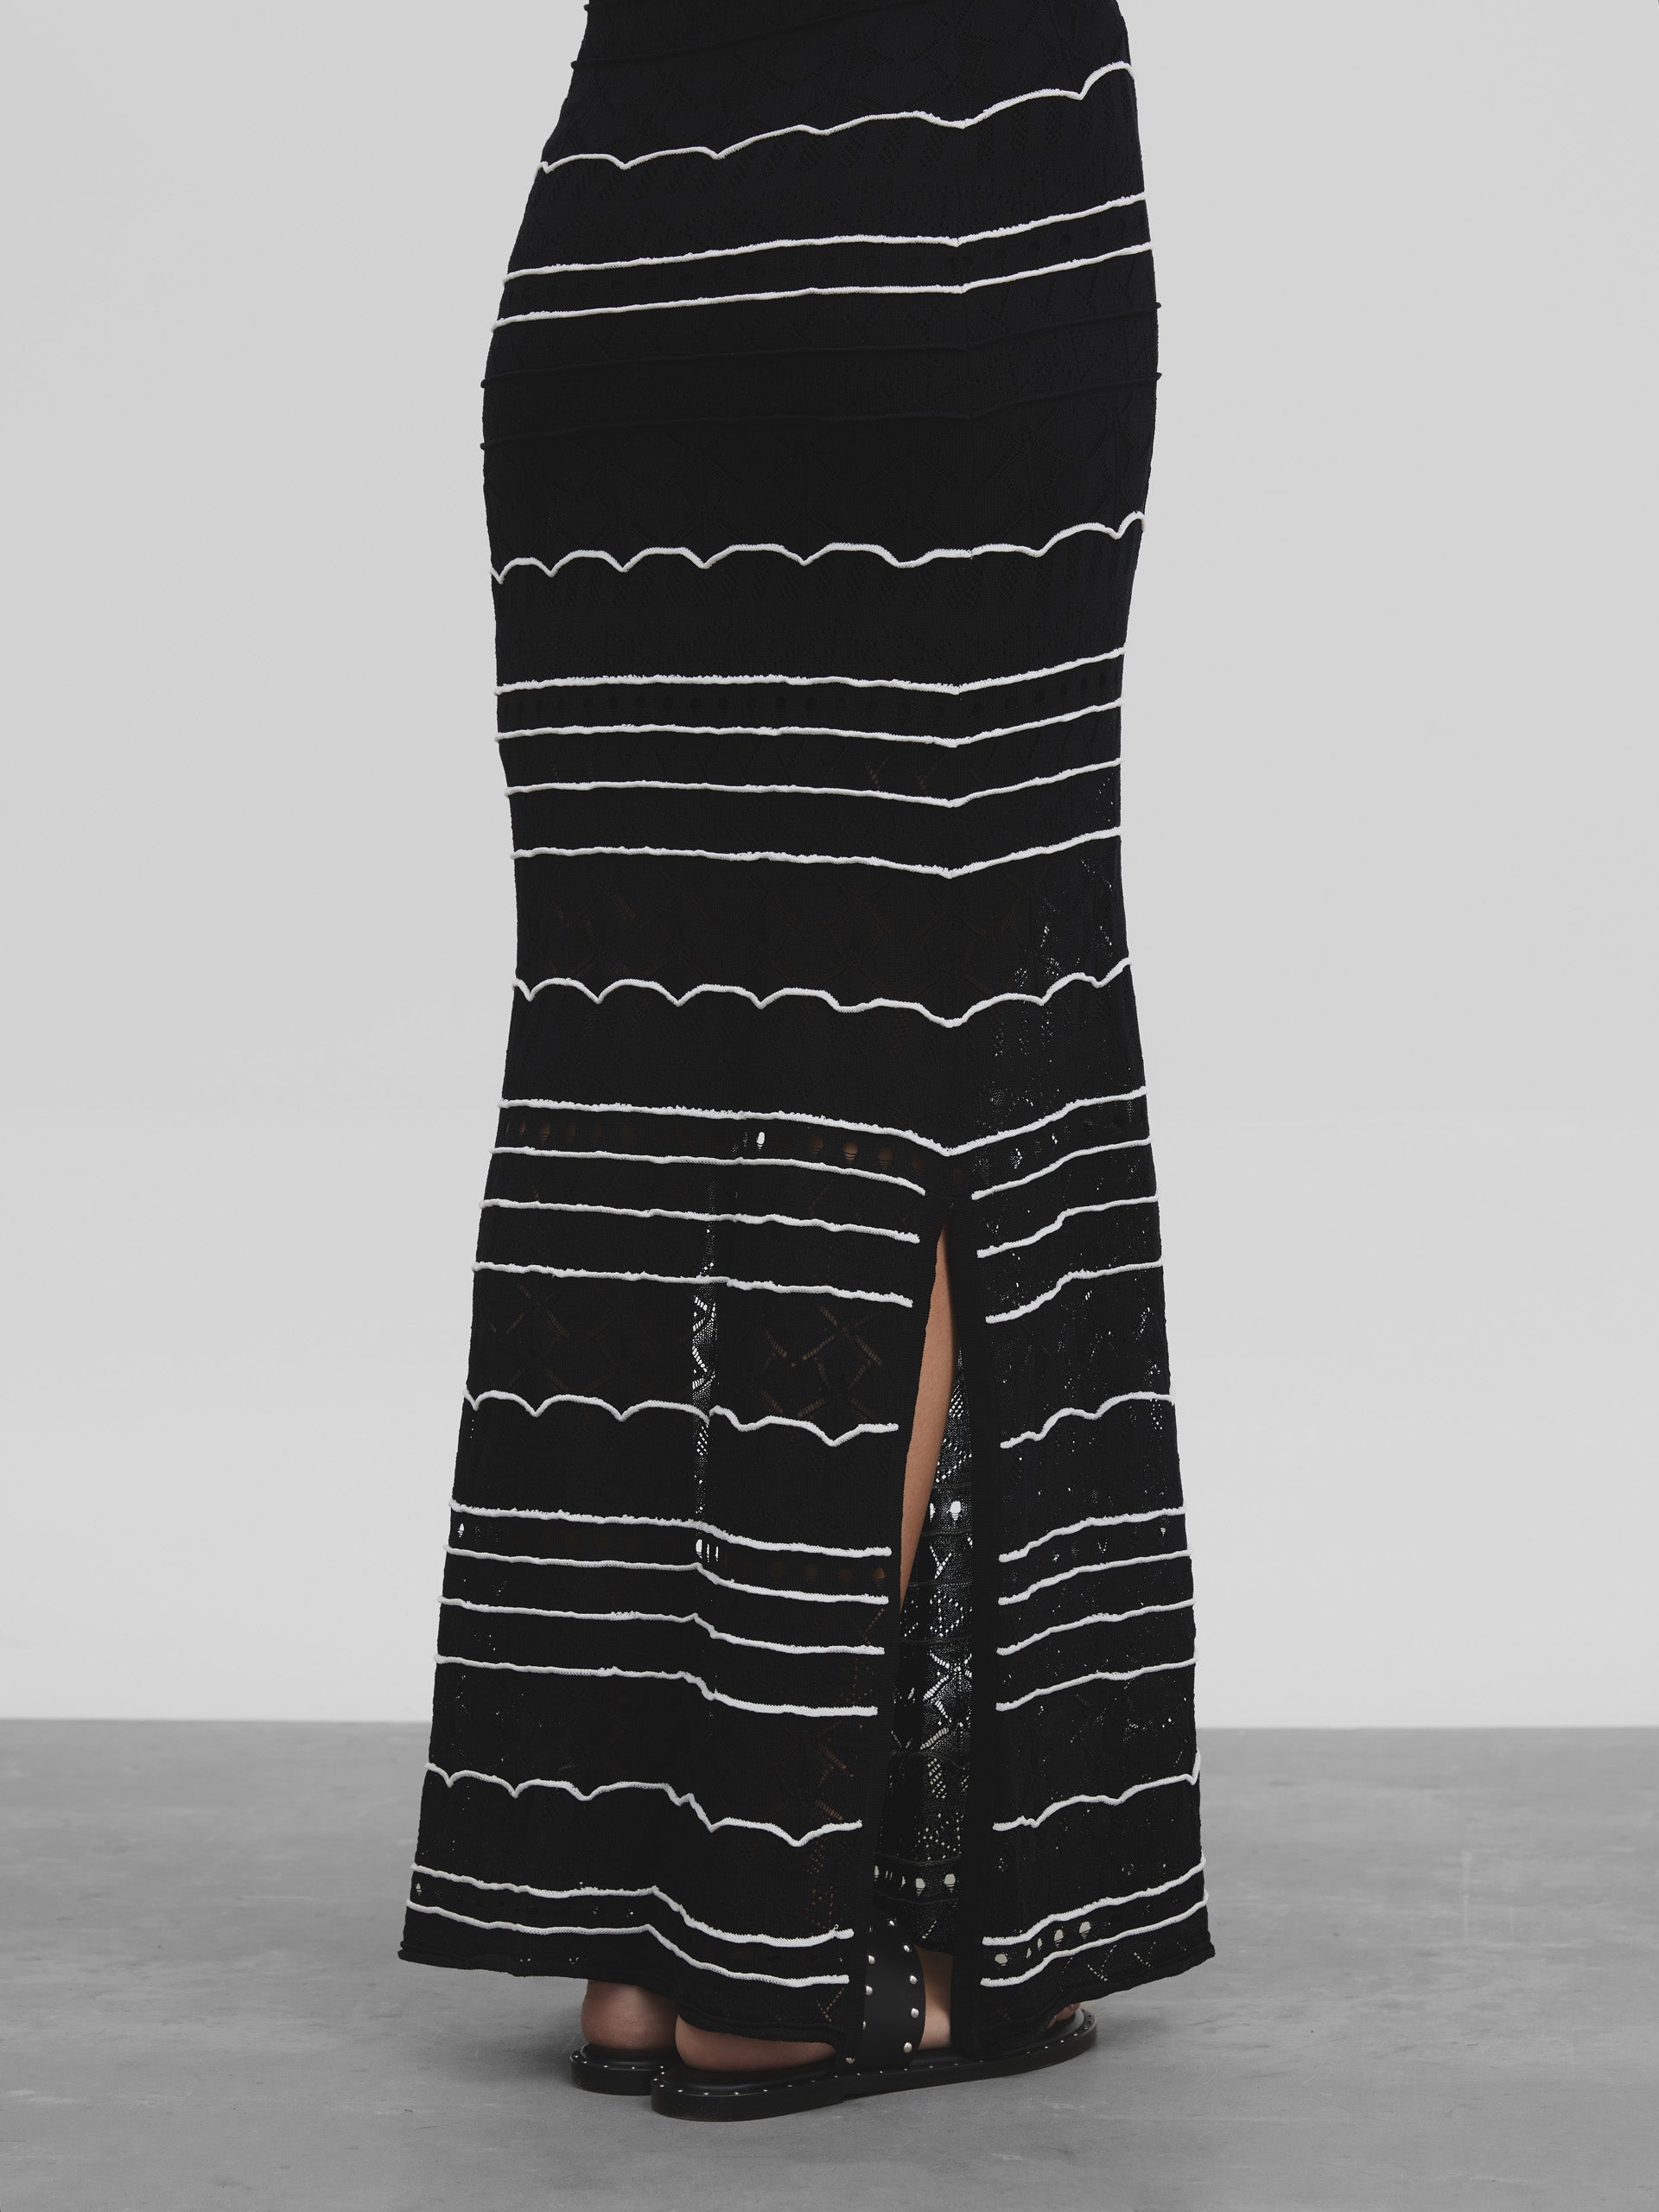 Robe longue en maille rayée noire et blanche